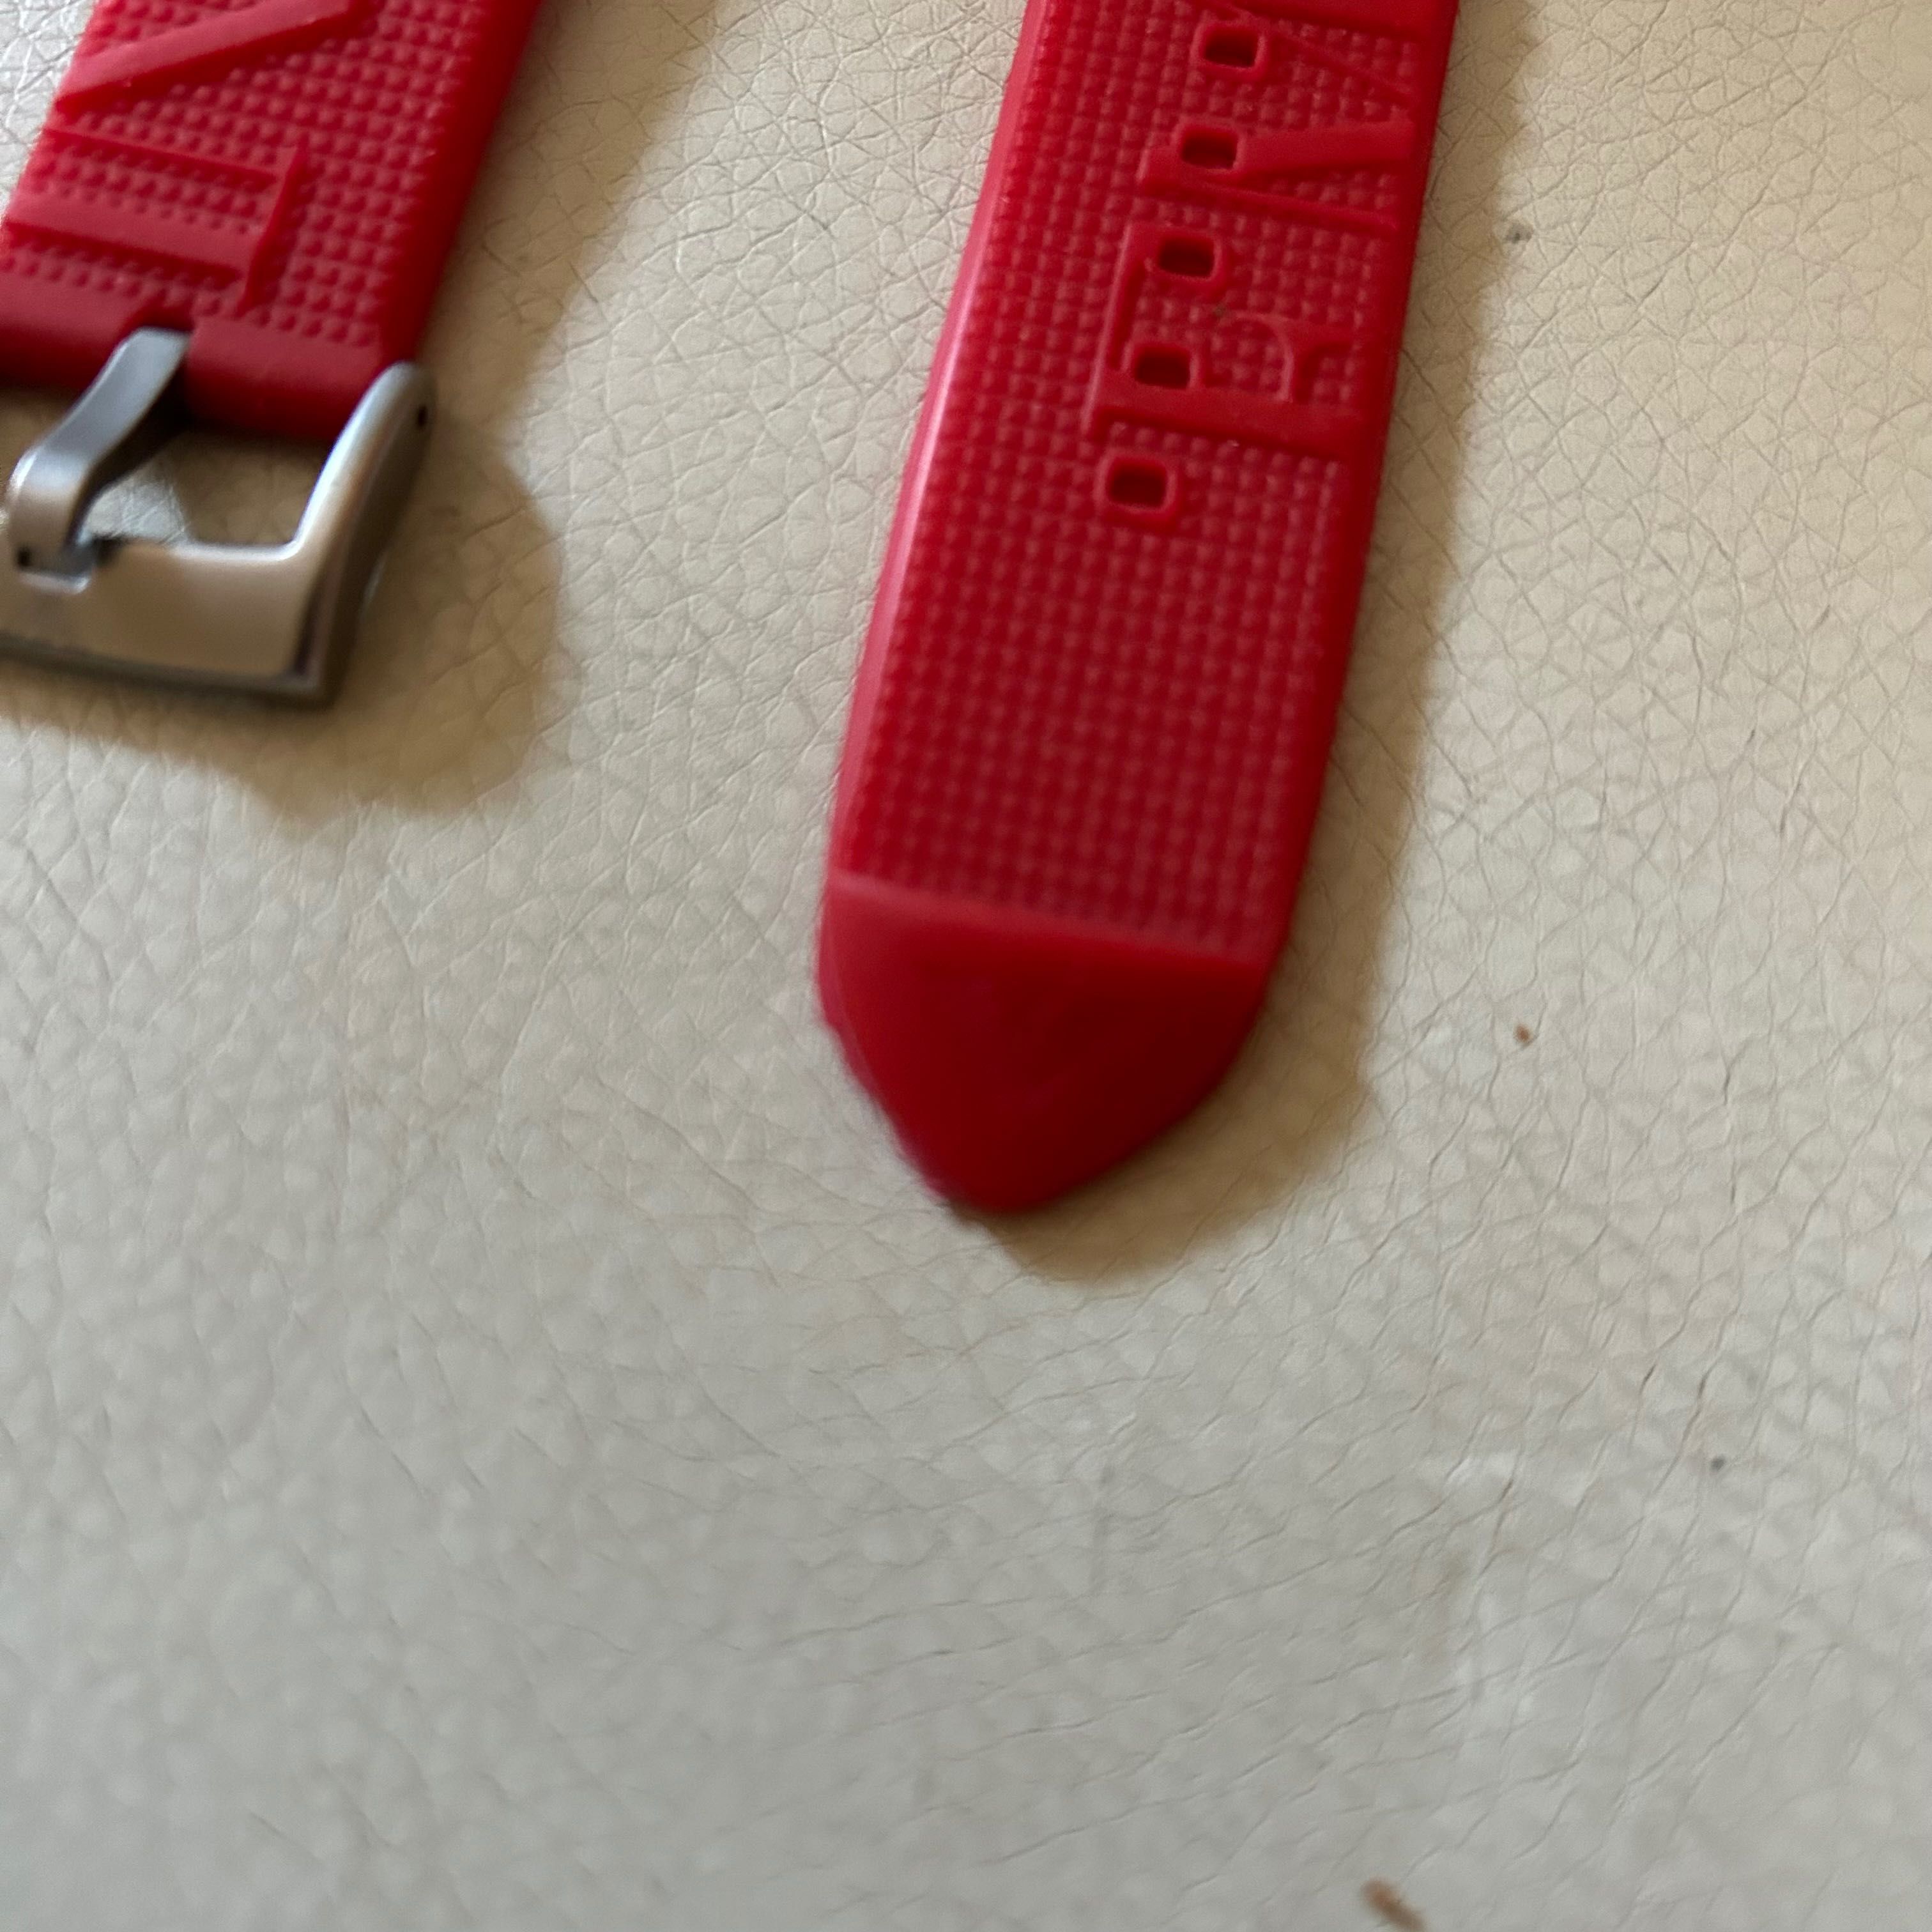 Pasek do zegarka Emporio Armani czerwony 22mm